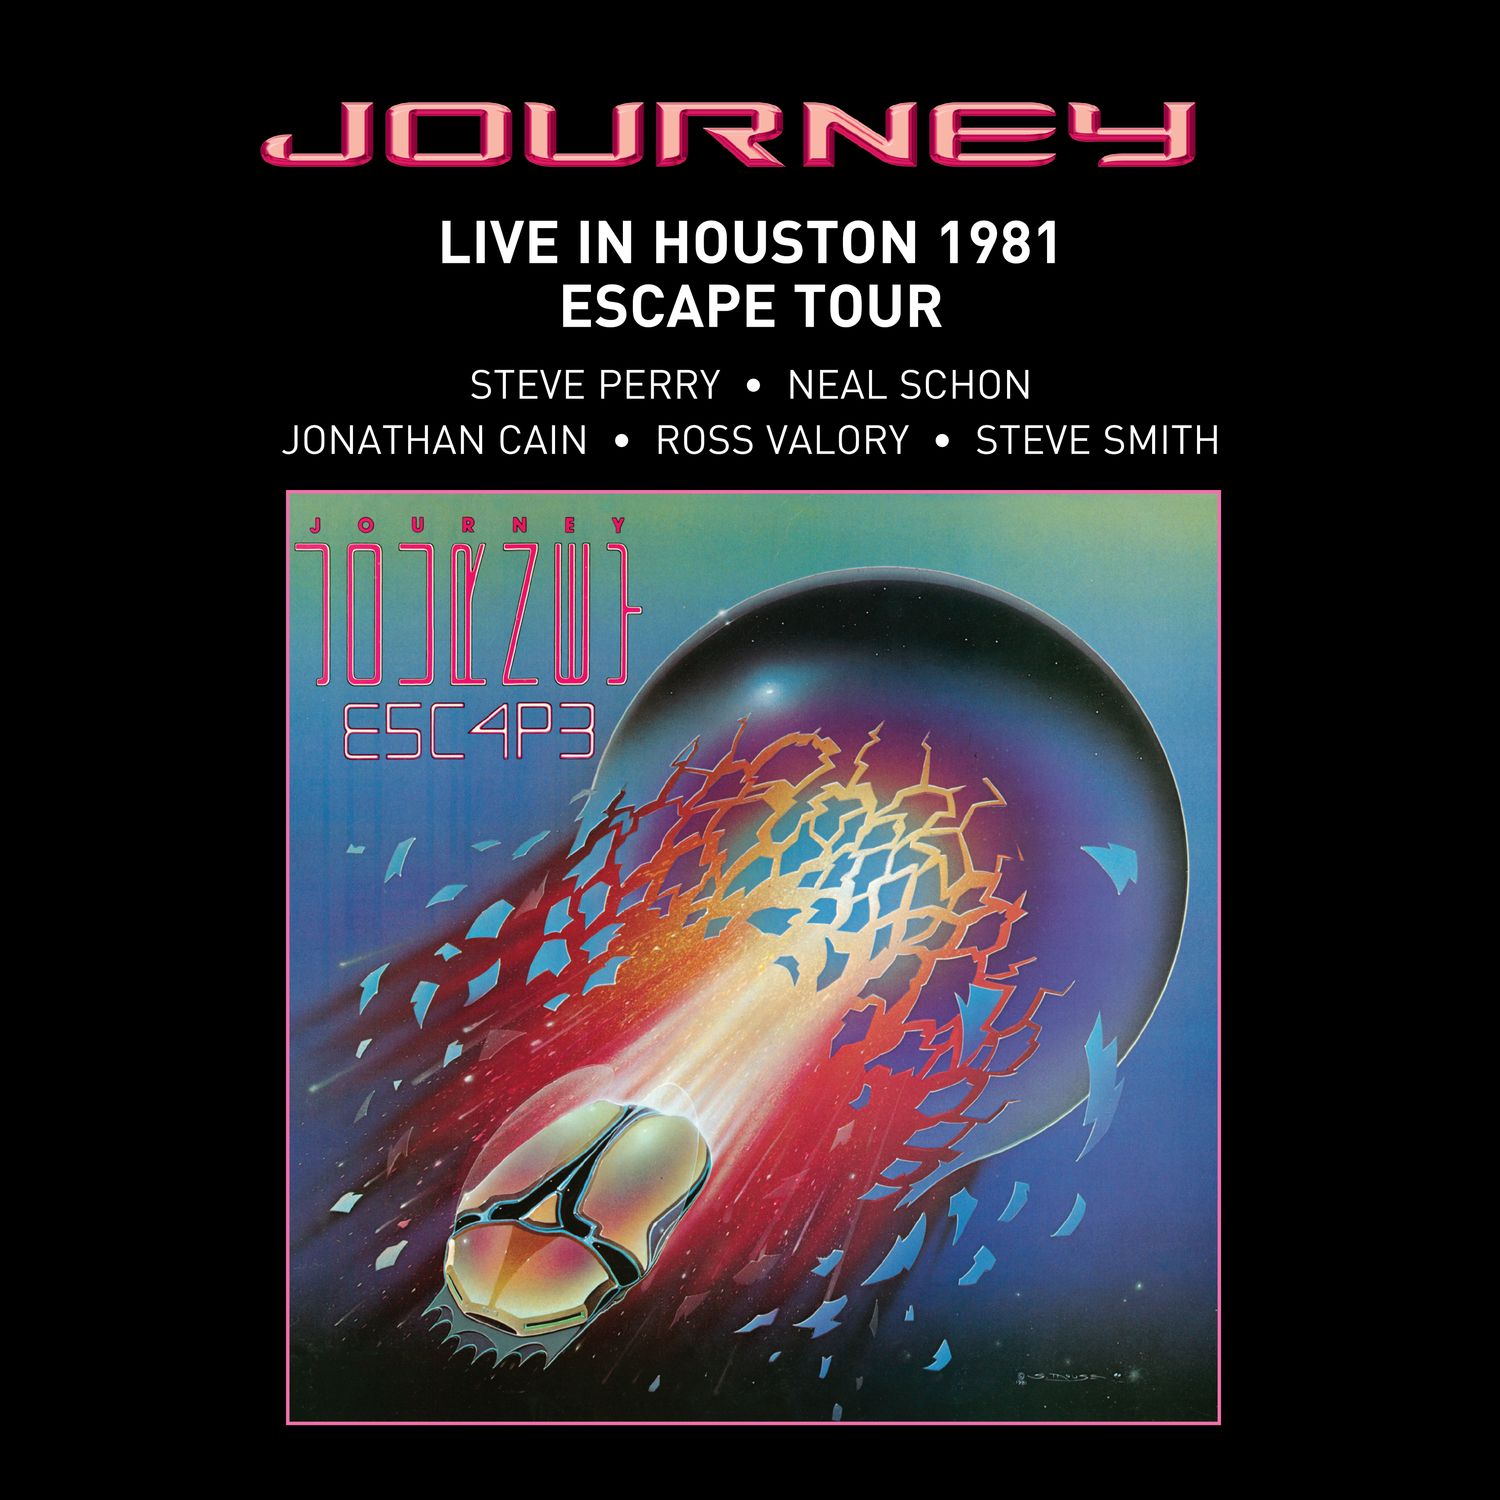 LIVE IN HOUSTON 1981: THE ESCAPE TOUR